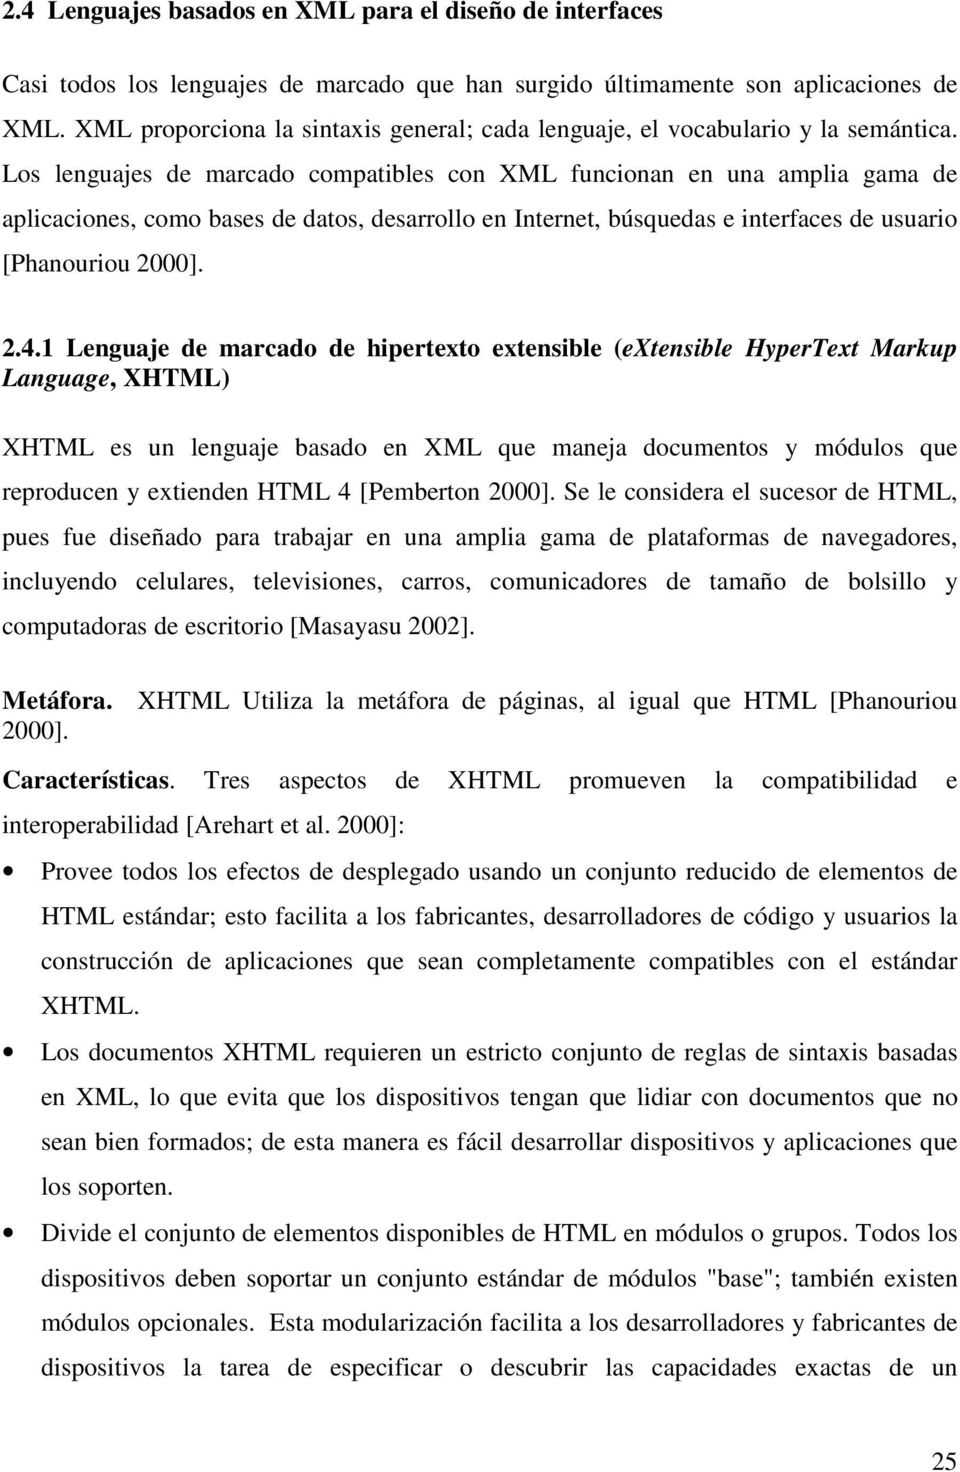 Los lenguajes de marcado compatibles con XML funcionan en una amplia gama de aplicaciones, como bases de datos, desarrollo en Internet, búsquedas e interfaces de usuario [Phanouriou 2000]. 2.4.